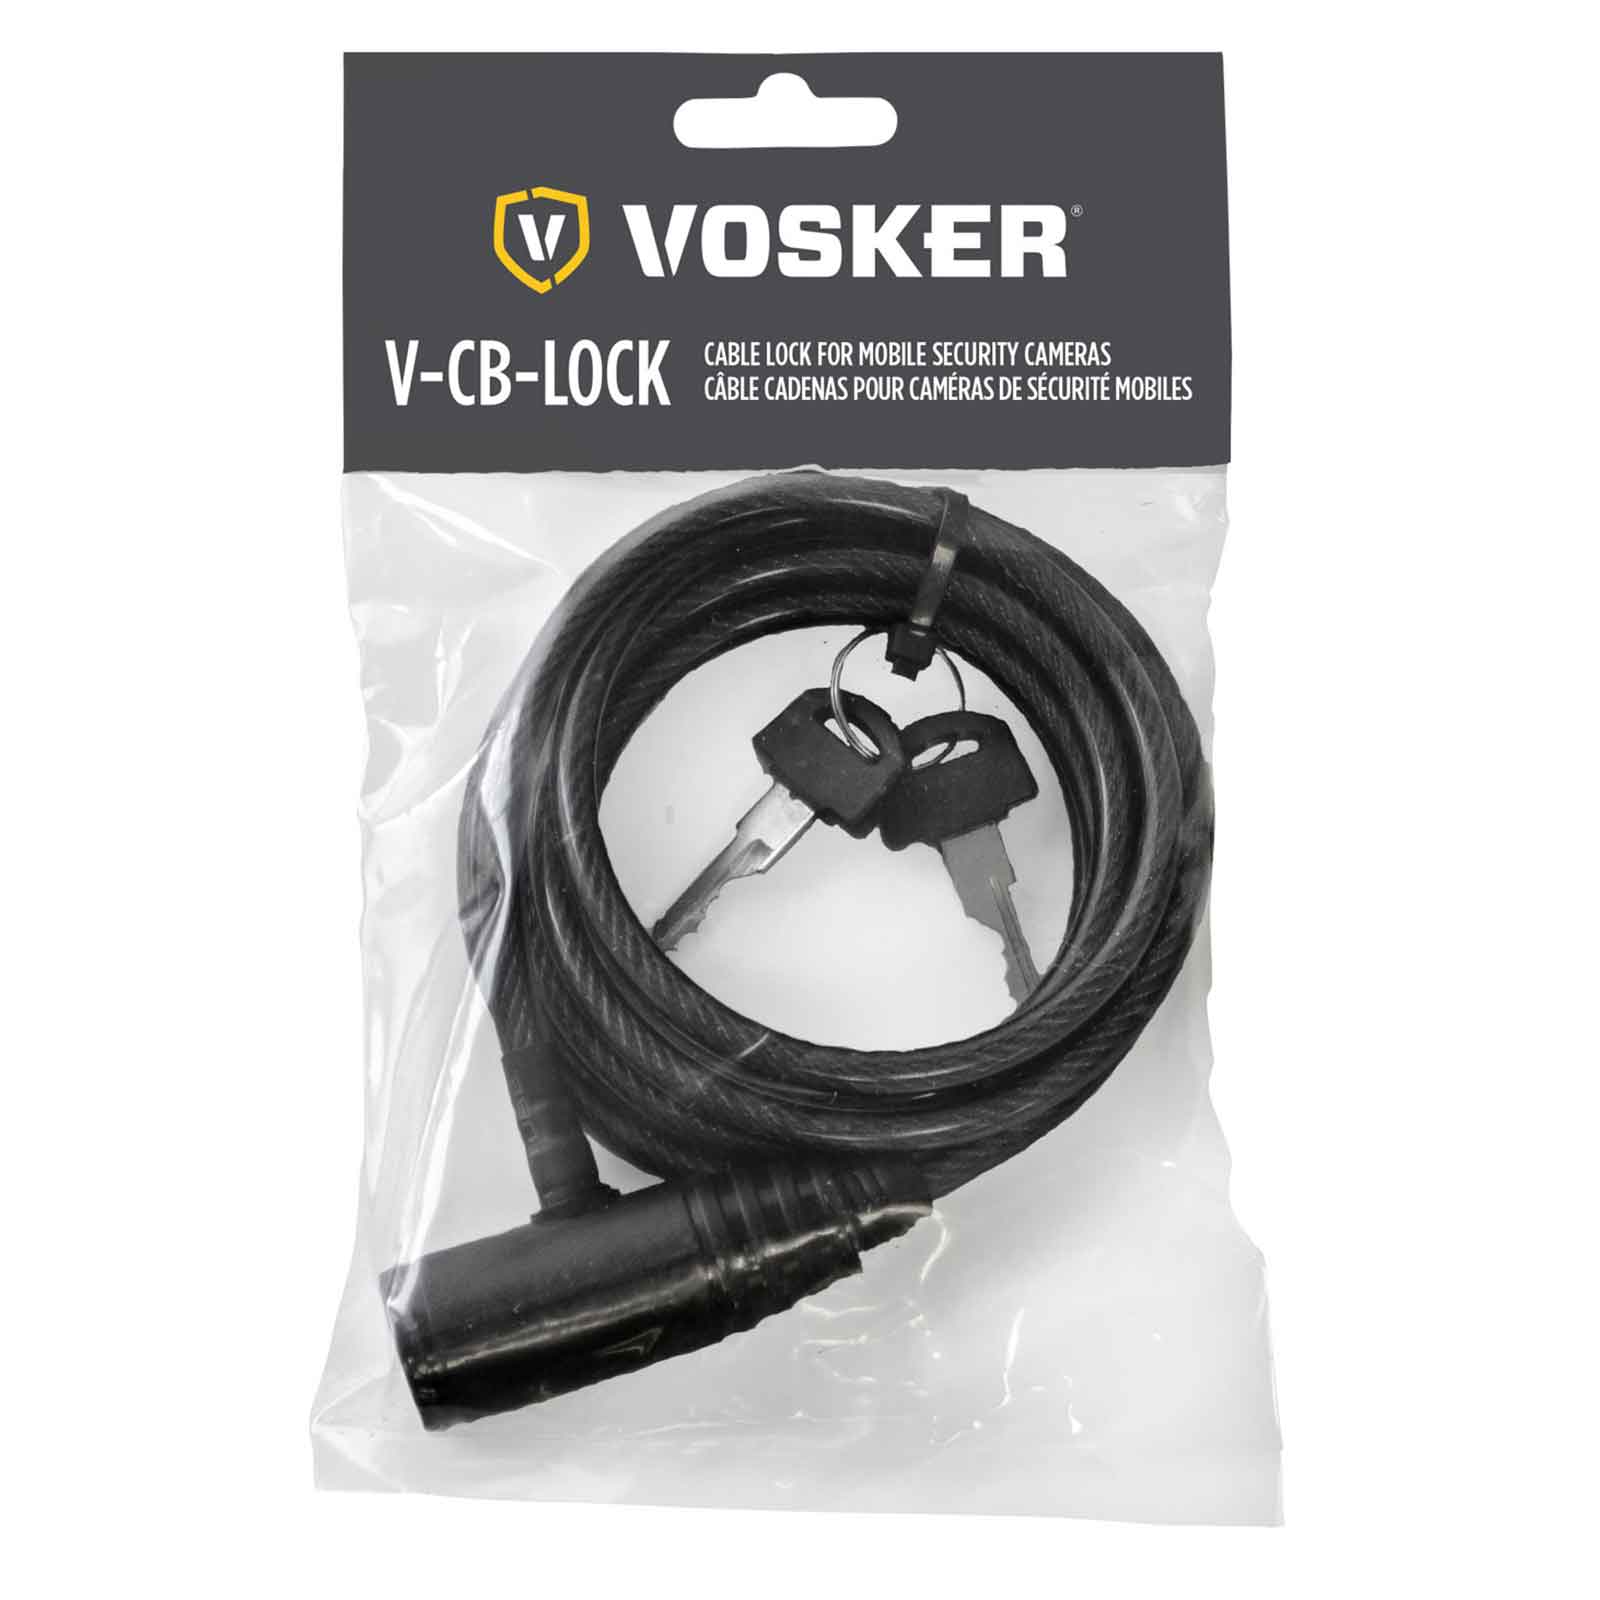 Antivol Vosker V-CB-LOCK